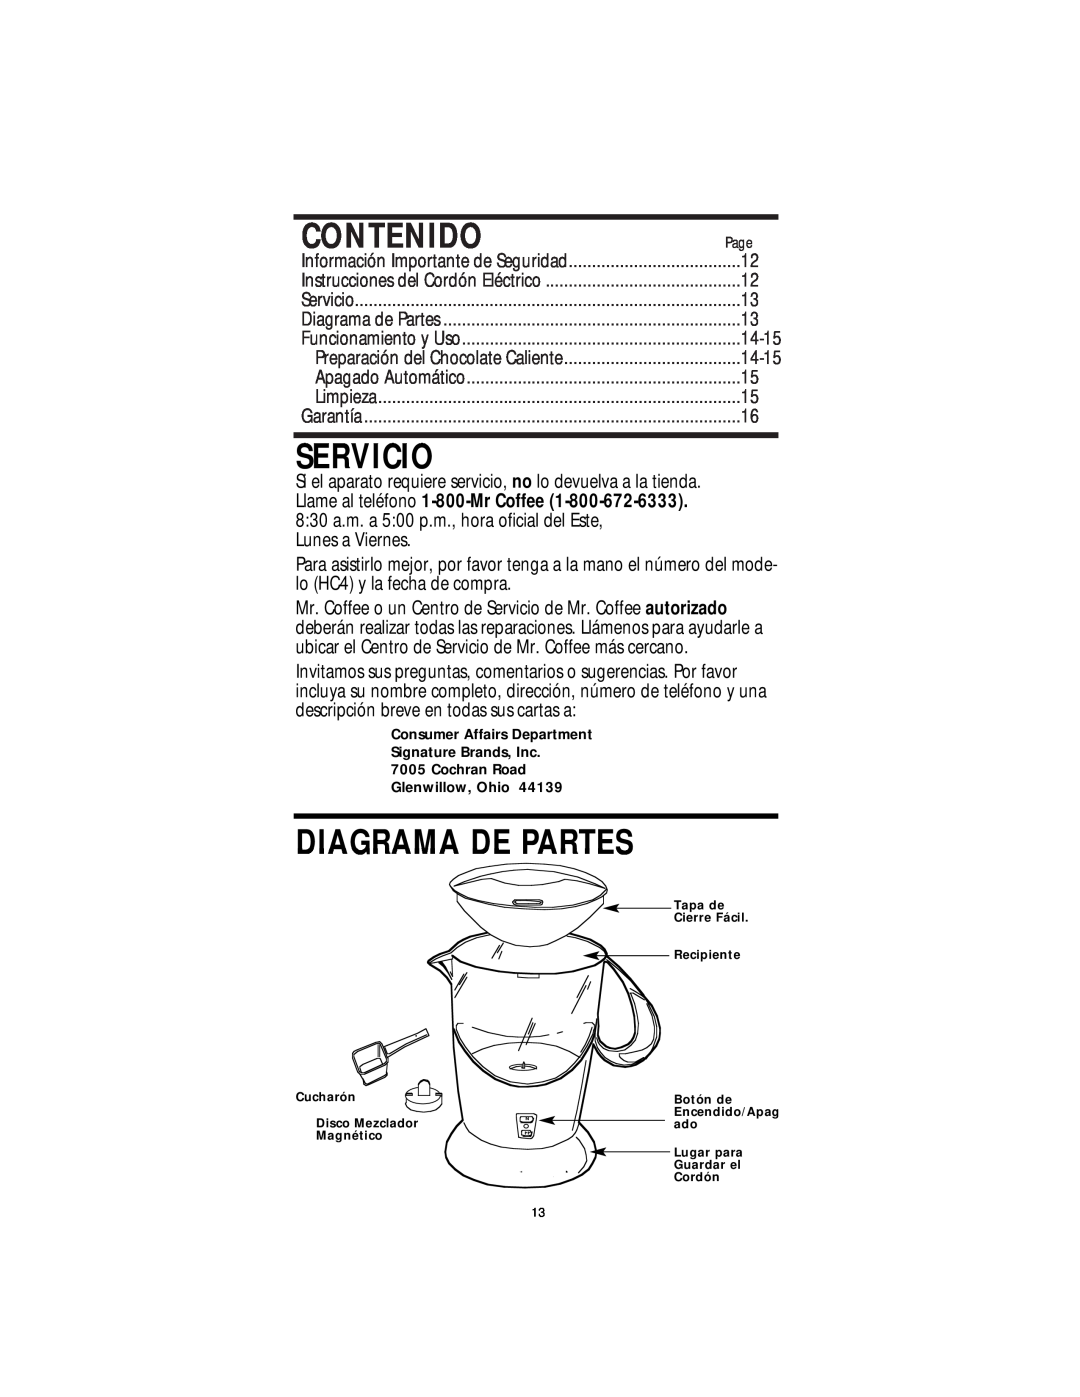 Mr. Coffee HC4 operating instructions Contenido, Servicio, Diagrama De Partes 